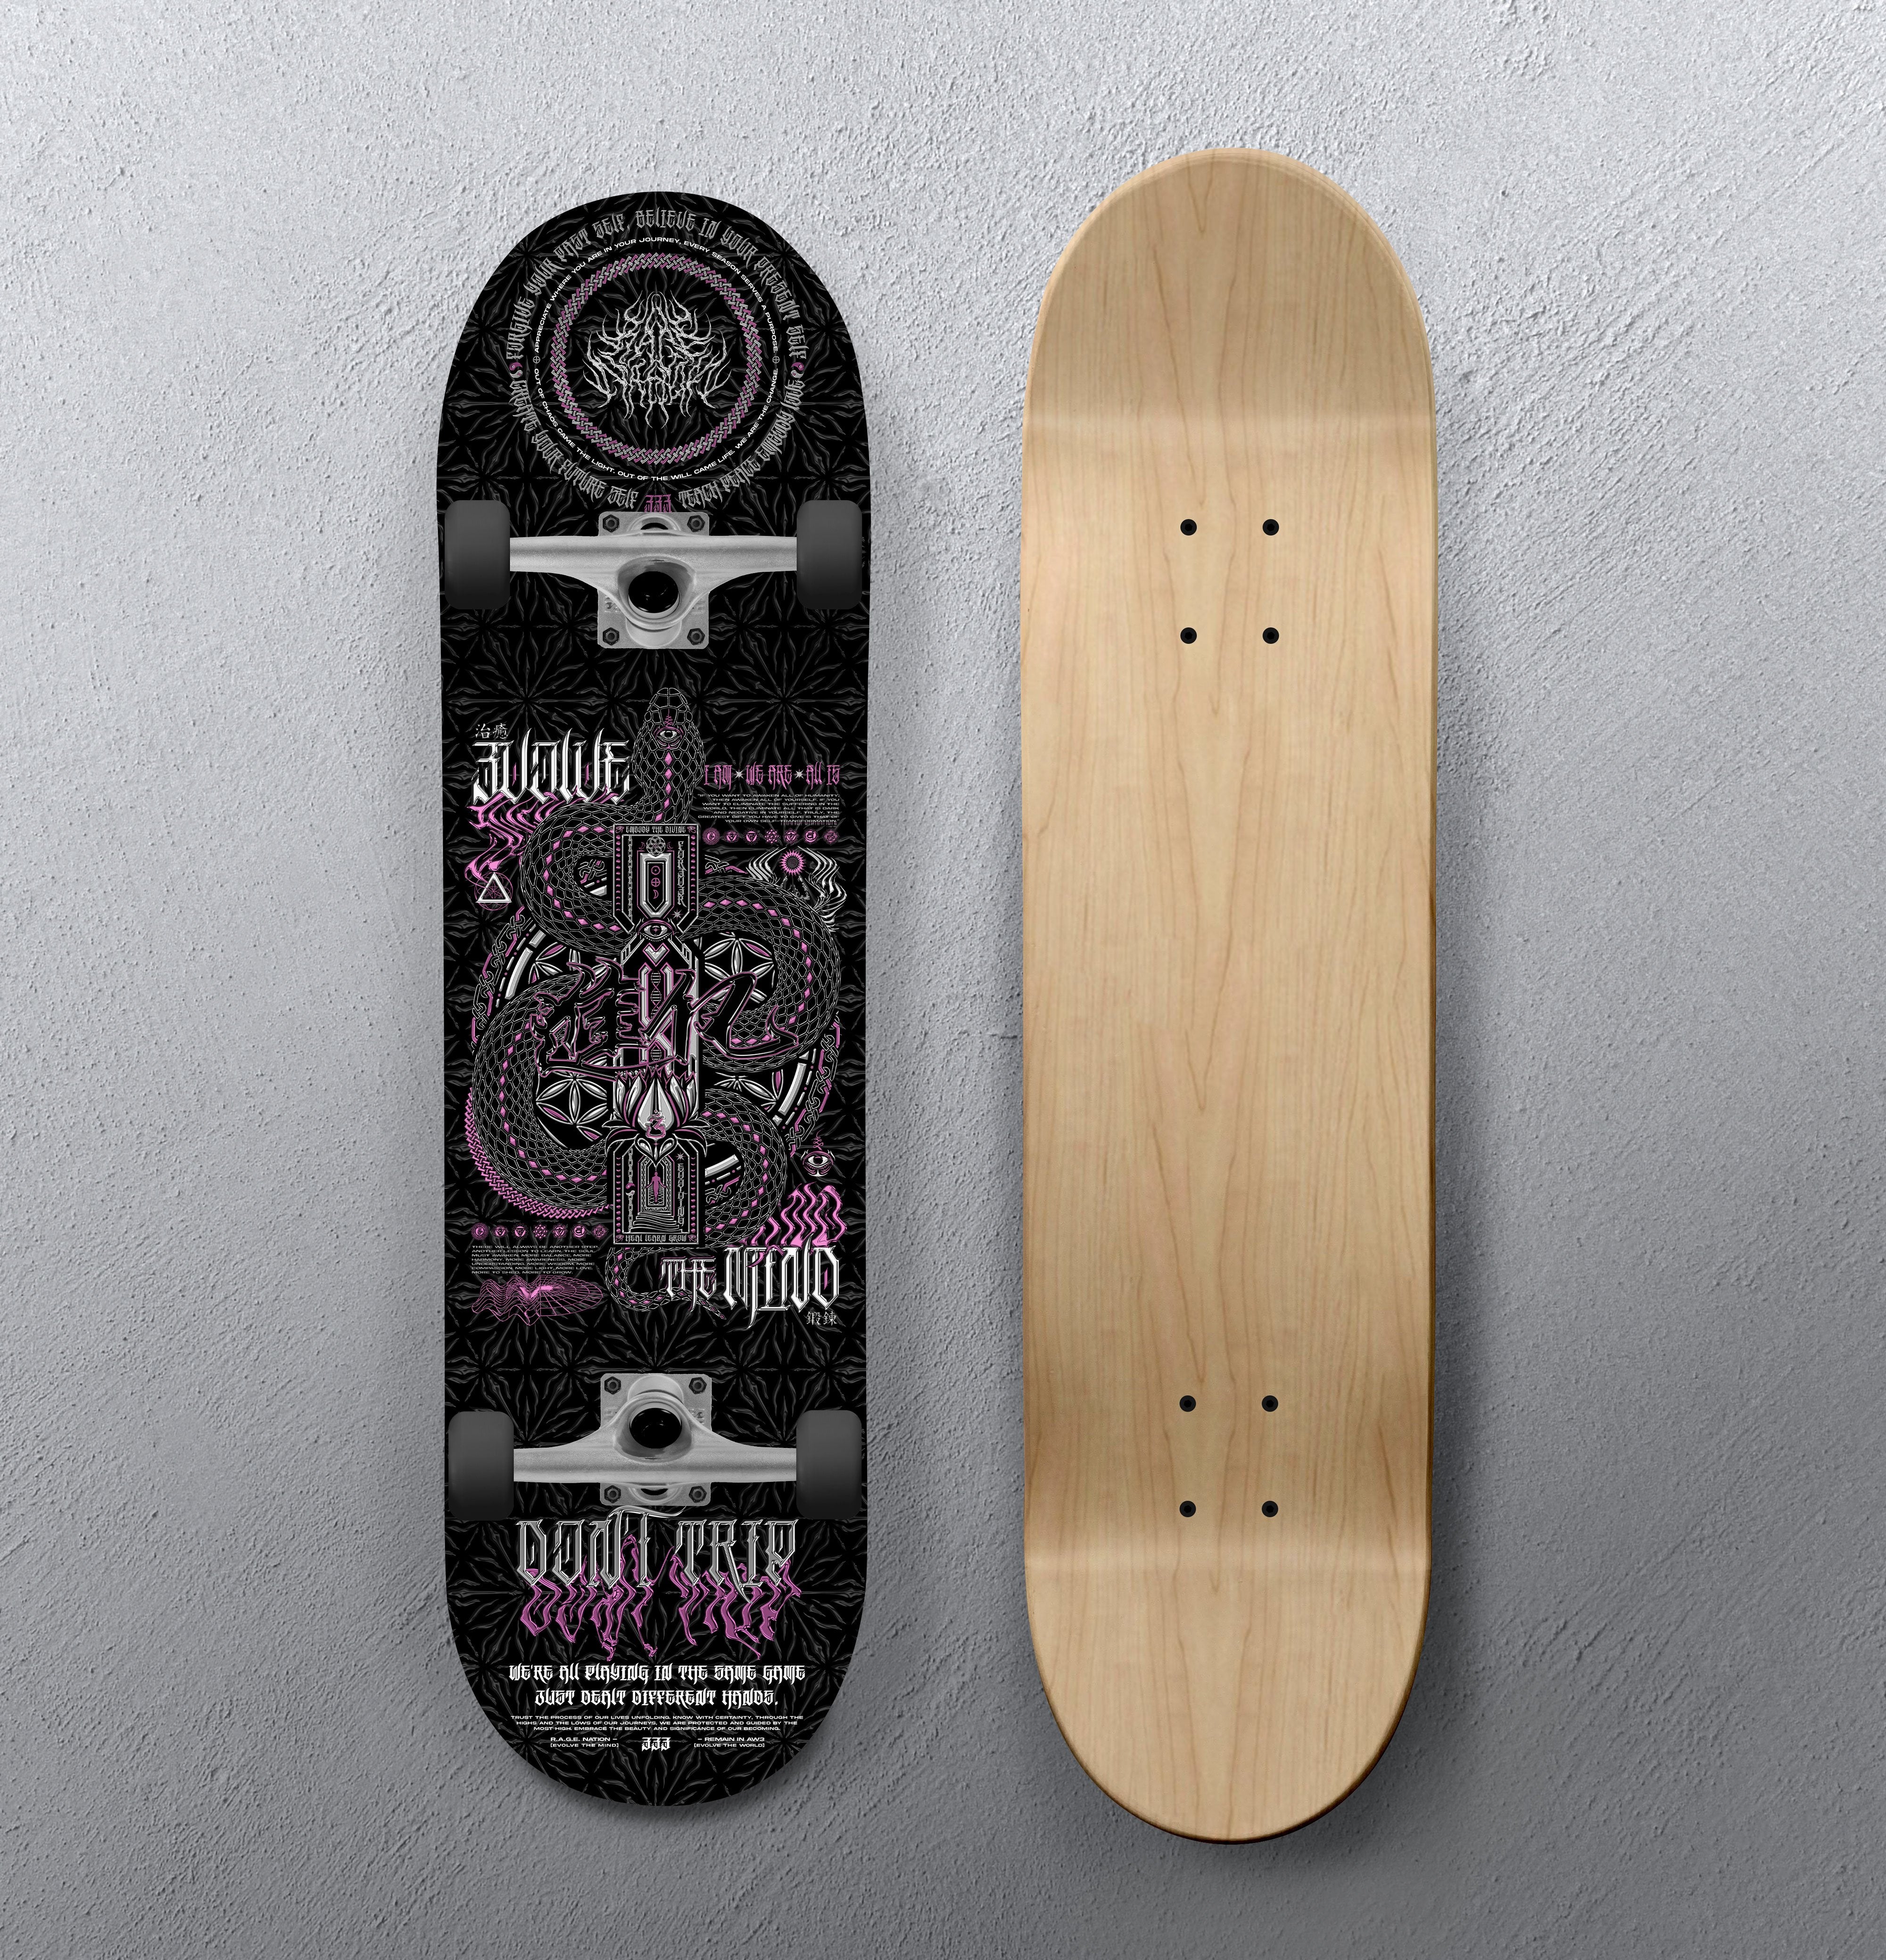 EVOLVE THE MIND V2 • Skateboard Deck • Limited Edition 100 Skateboard 